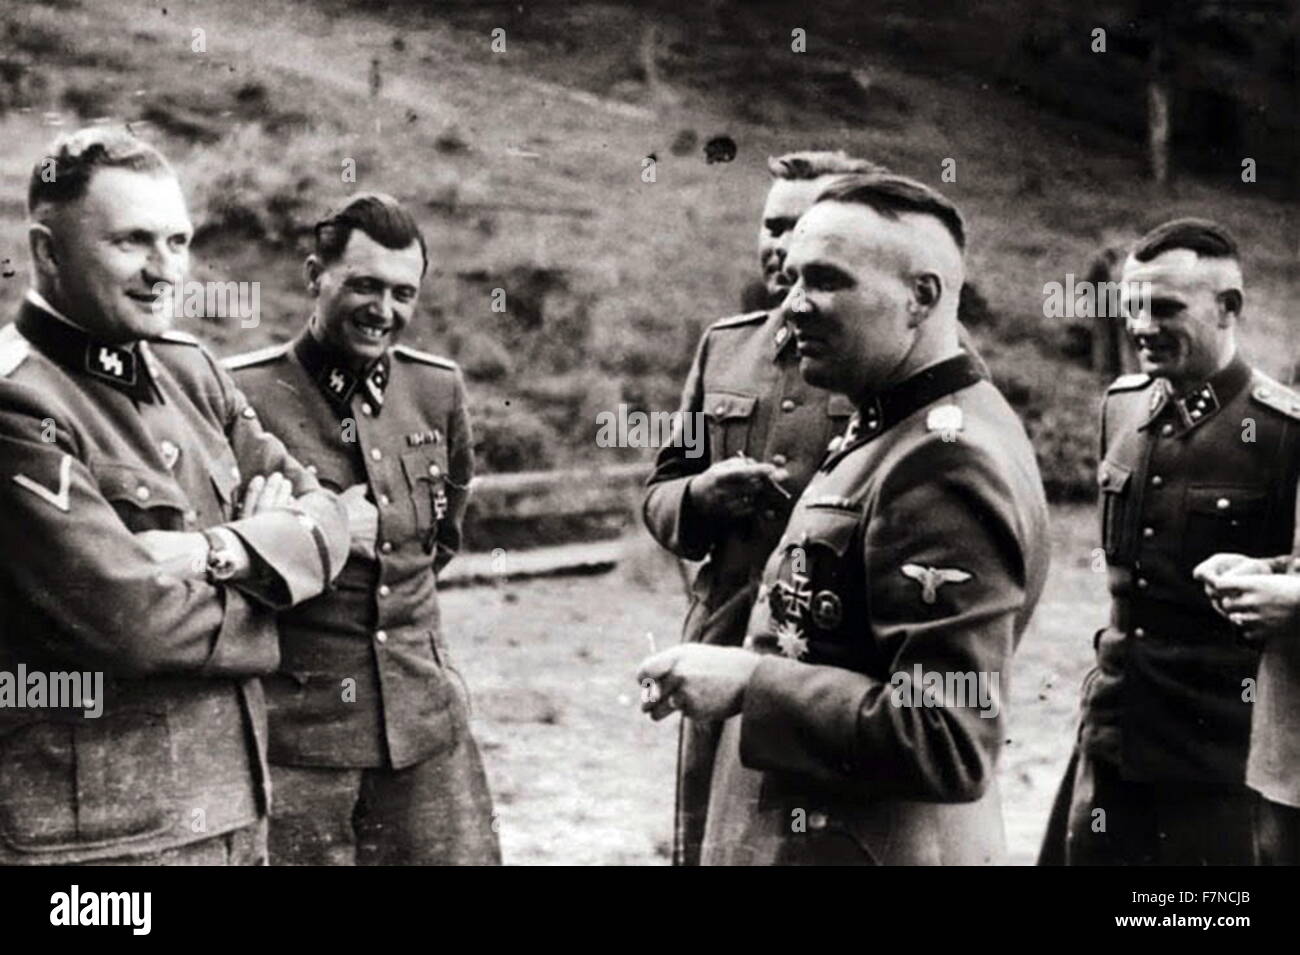 Gruppo degli ufficiali delle SS in Auschwitz: da sinistra, Karl Hoecker, il dott. Josef Mengele, Karl-Friedrich Hoecker (11 dicembre 1911 - 30 gennaio 2000) era un SS-Obersturmführer (Primo Tenente) e l'aiutante di campo a Richard Baer, che era un comandante del campo di concentramento di Auschwitz da maggio 1944 a dicembre 1944 Foto Stock